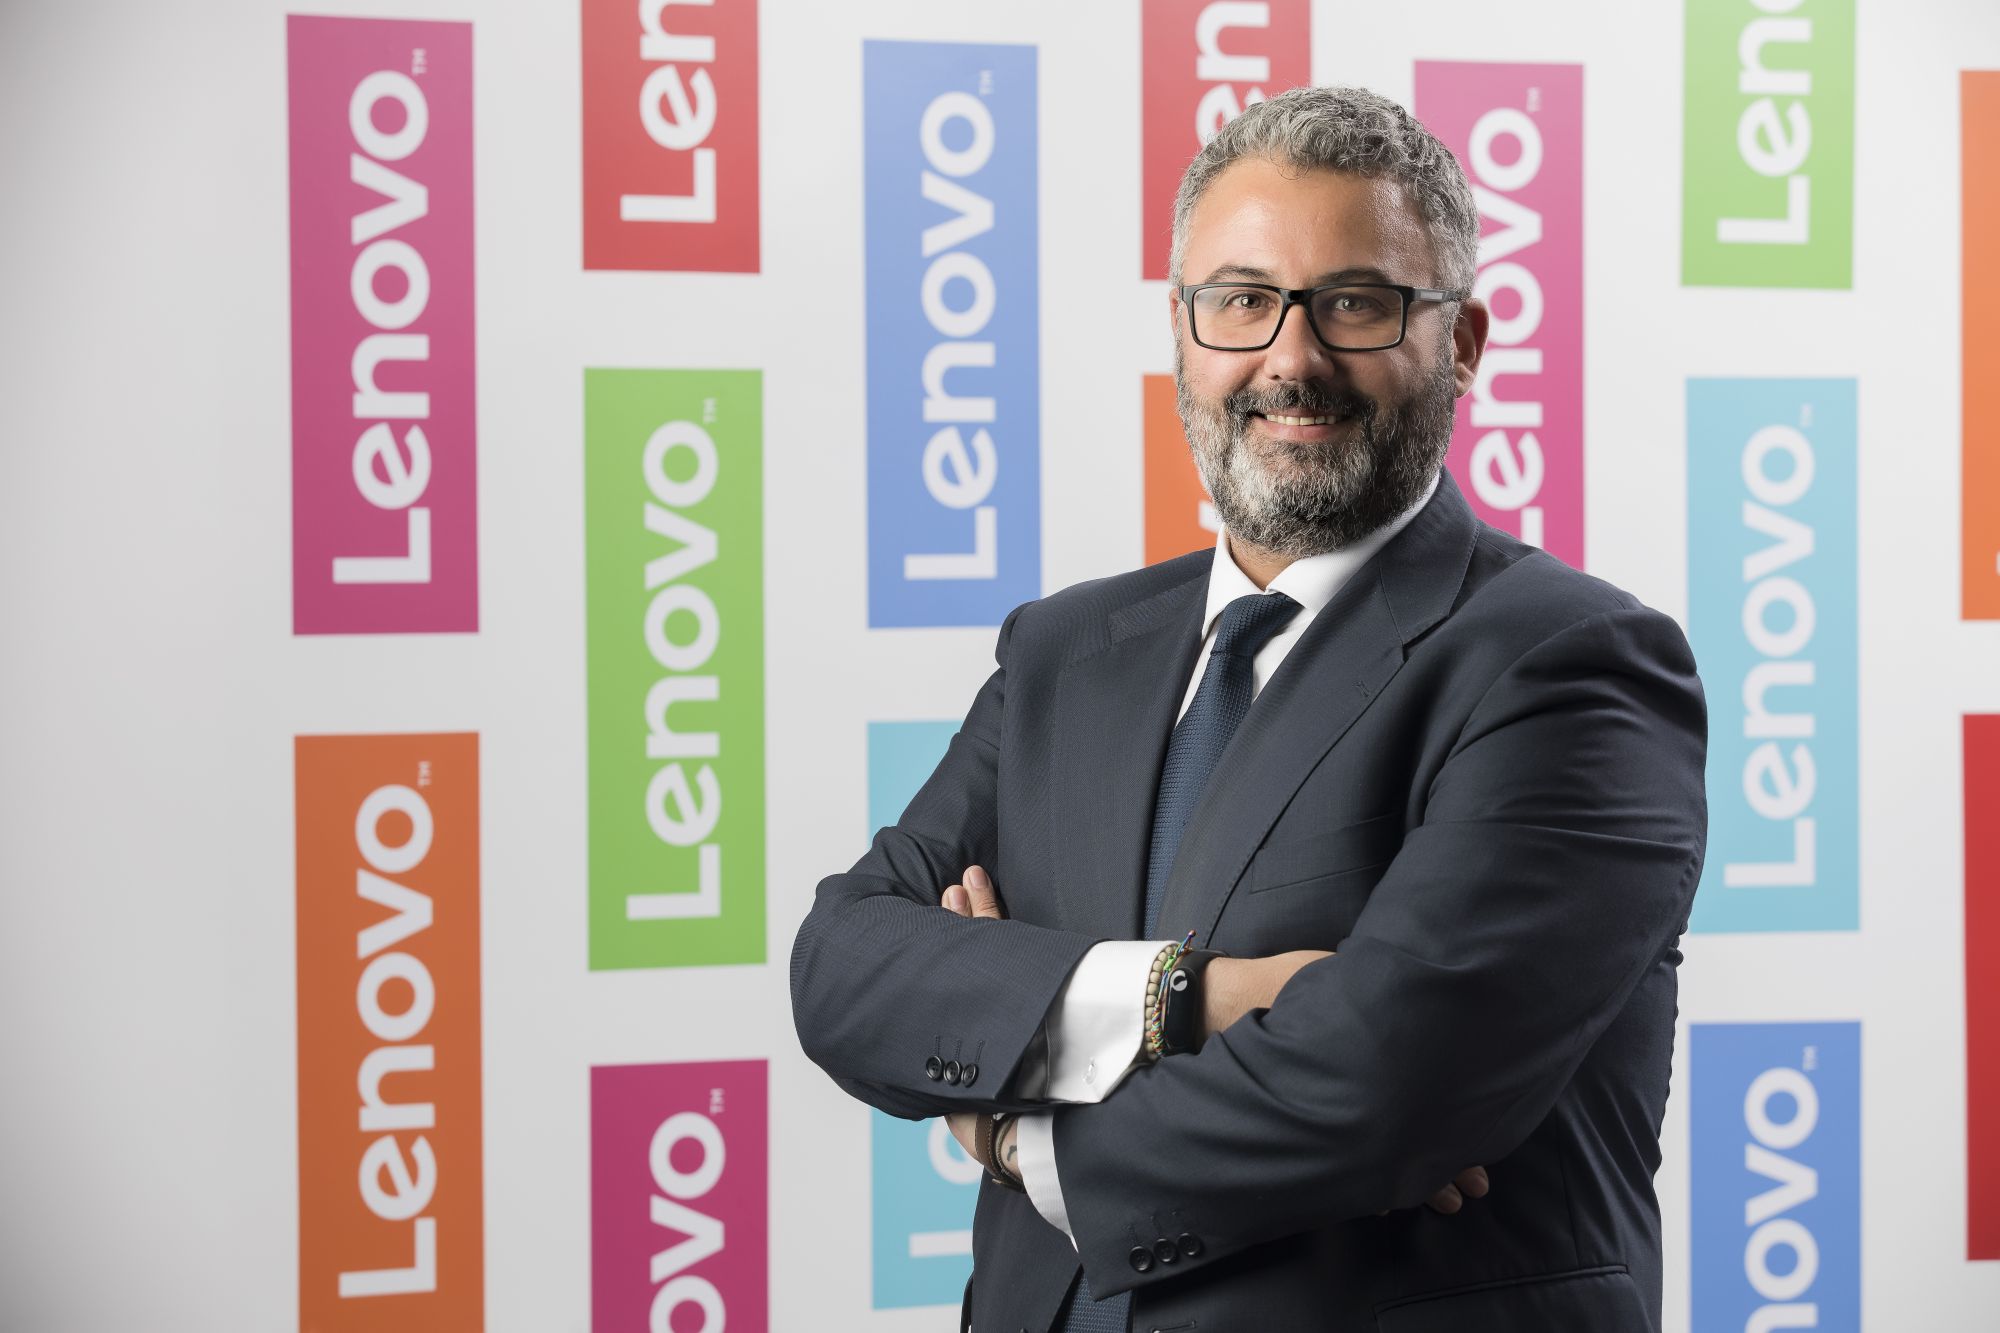 Miguel Hernández, toma el mando de la dirección de consumo de Lenovo Iberia | Imagenacion